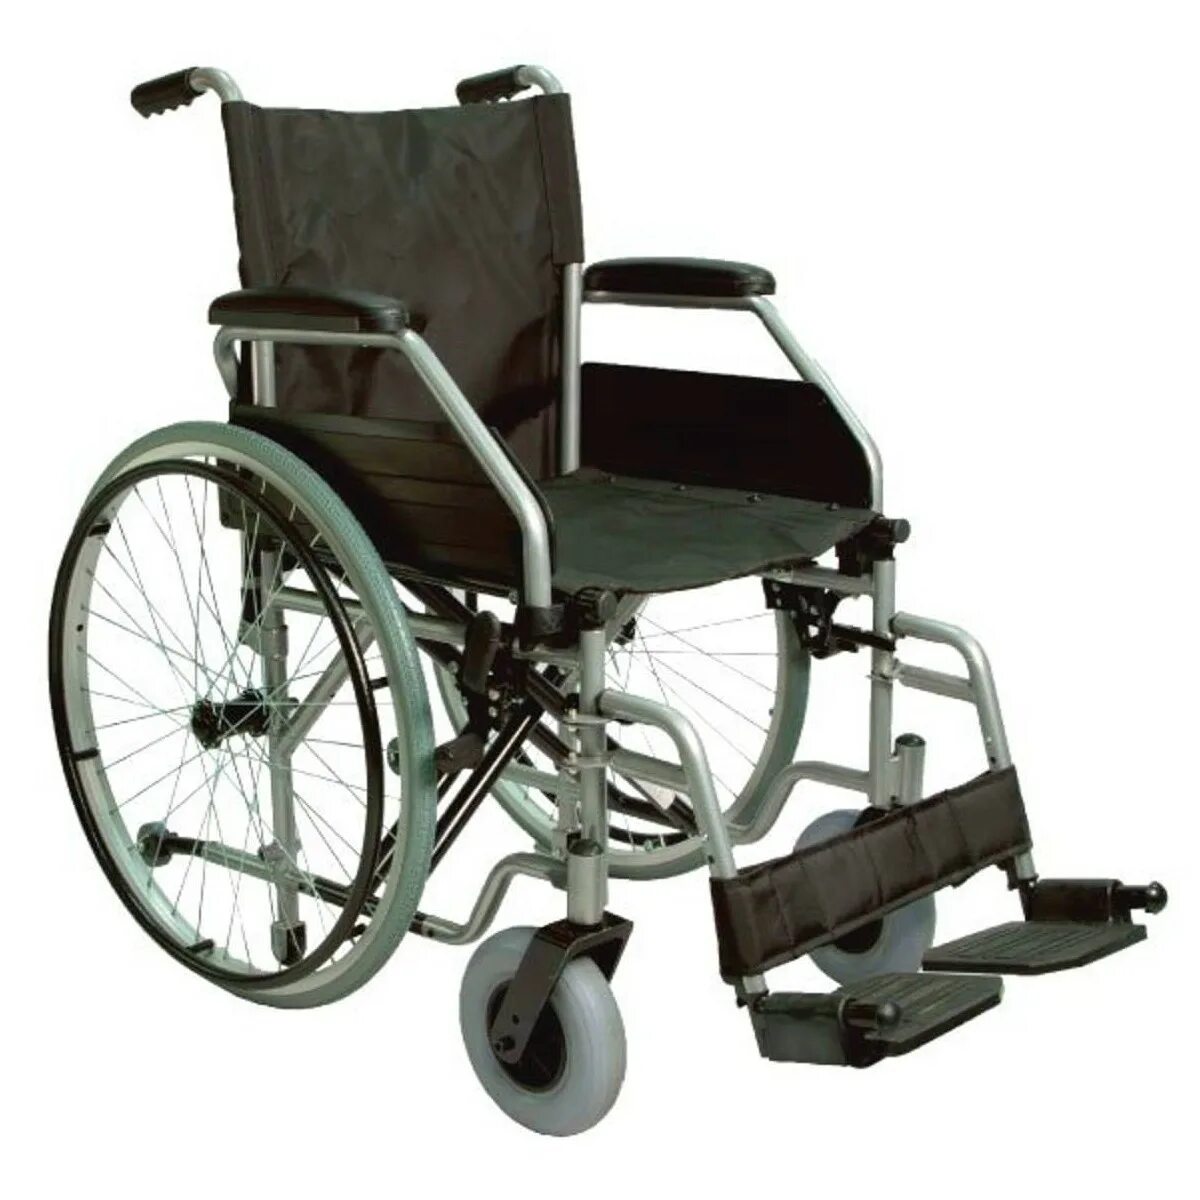 Где можно взять инвалидную коляску. Инвалидная коляска Ortopedia. Enigma c4 коляска инвалидная. Омега Люкс 550 коляска инвалидная. Инвалидная коляска Меркурий Люкс.